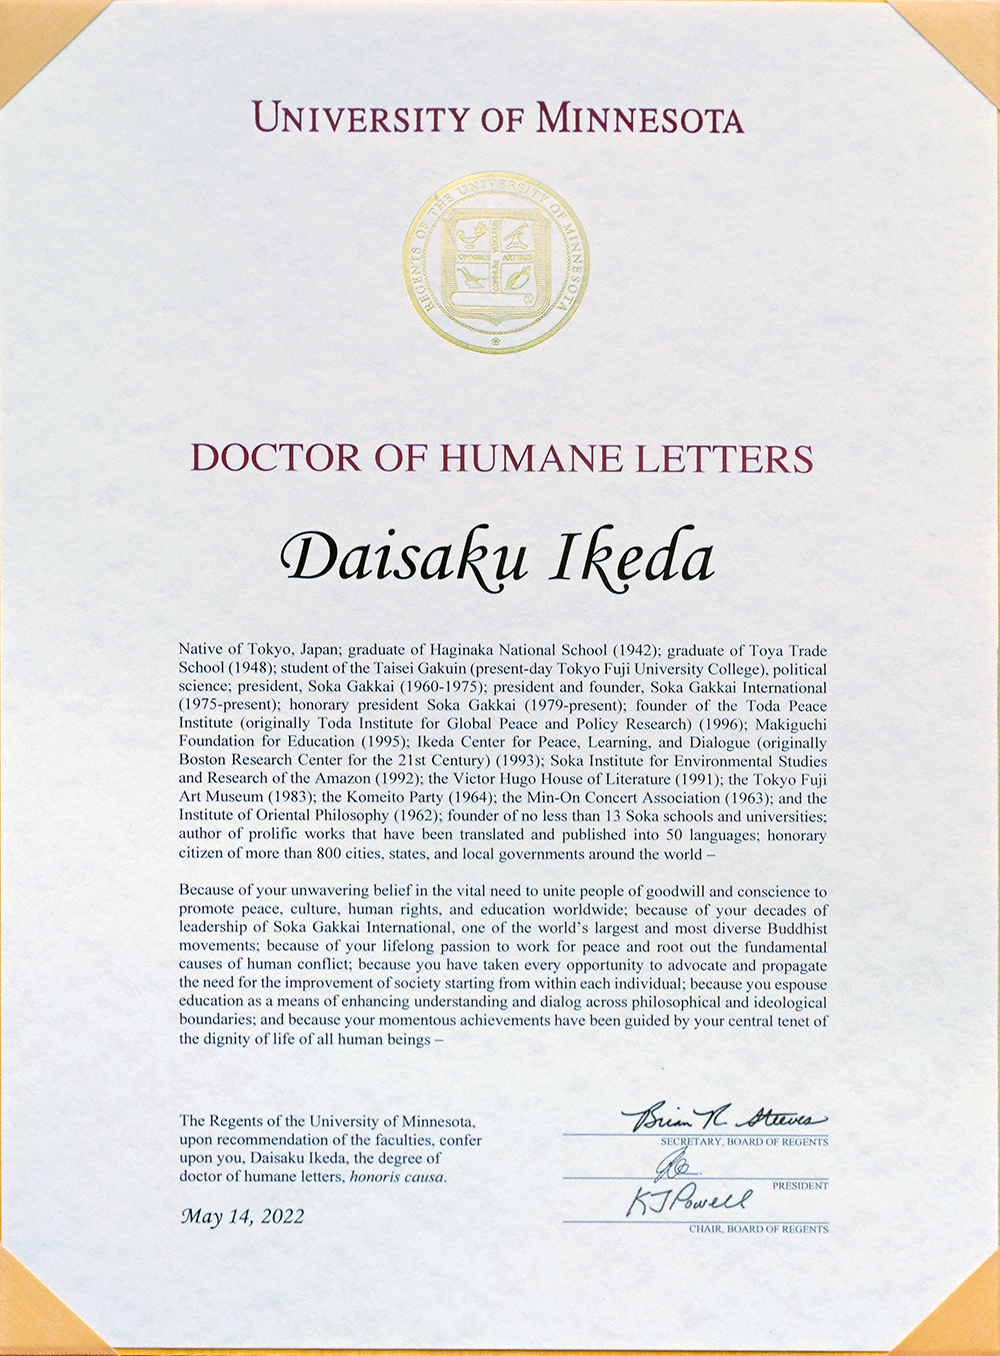 Doctorado honoris causa en humanidades otorgado a Daisaku Ikeda